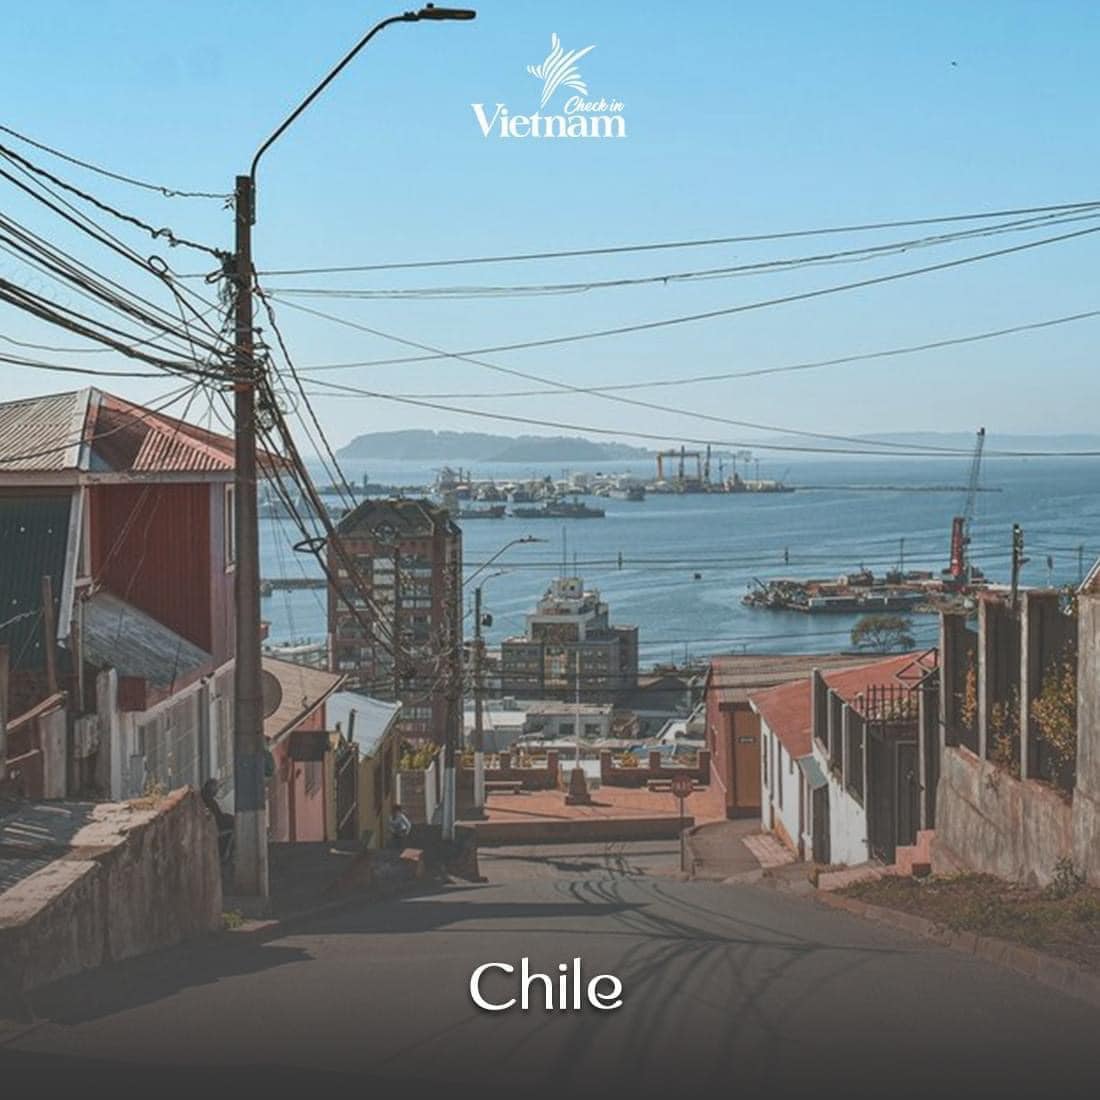 8. Chile